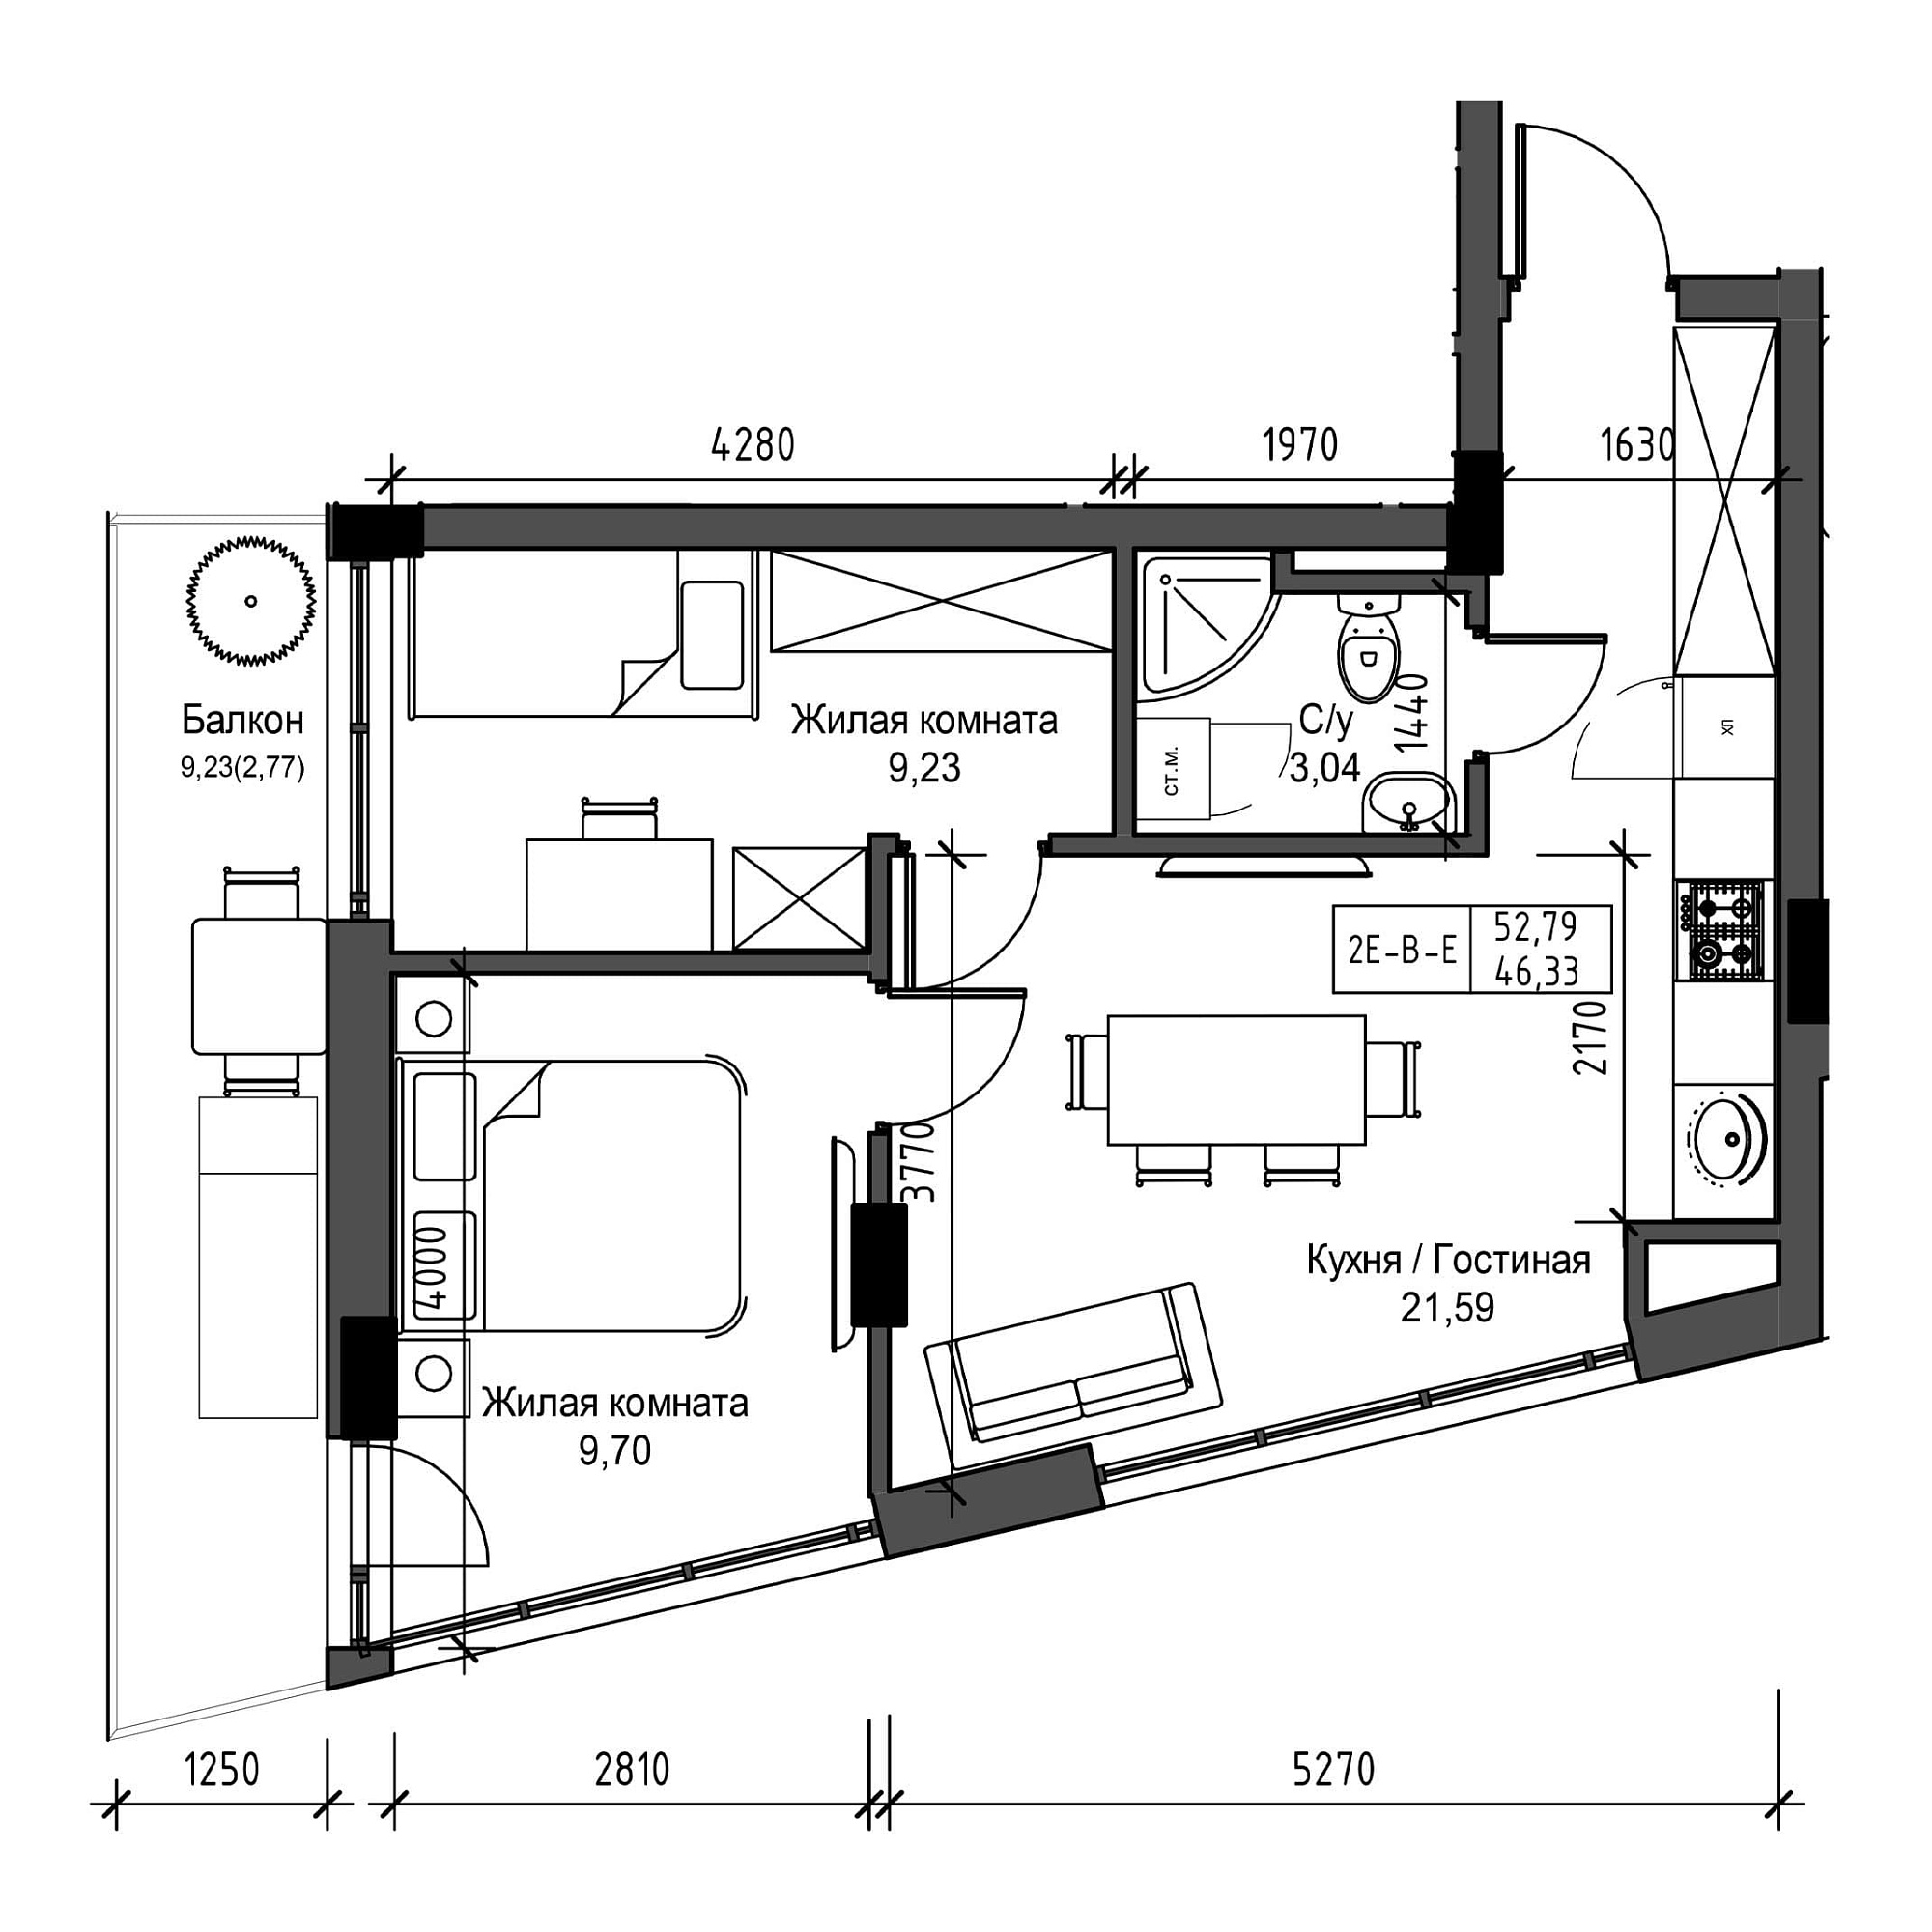 Планировка 2-к квартира площей 46.33м2, UM-001-07/0009.